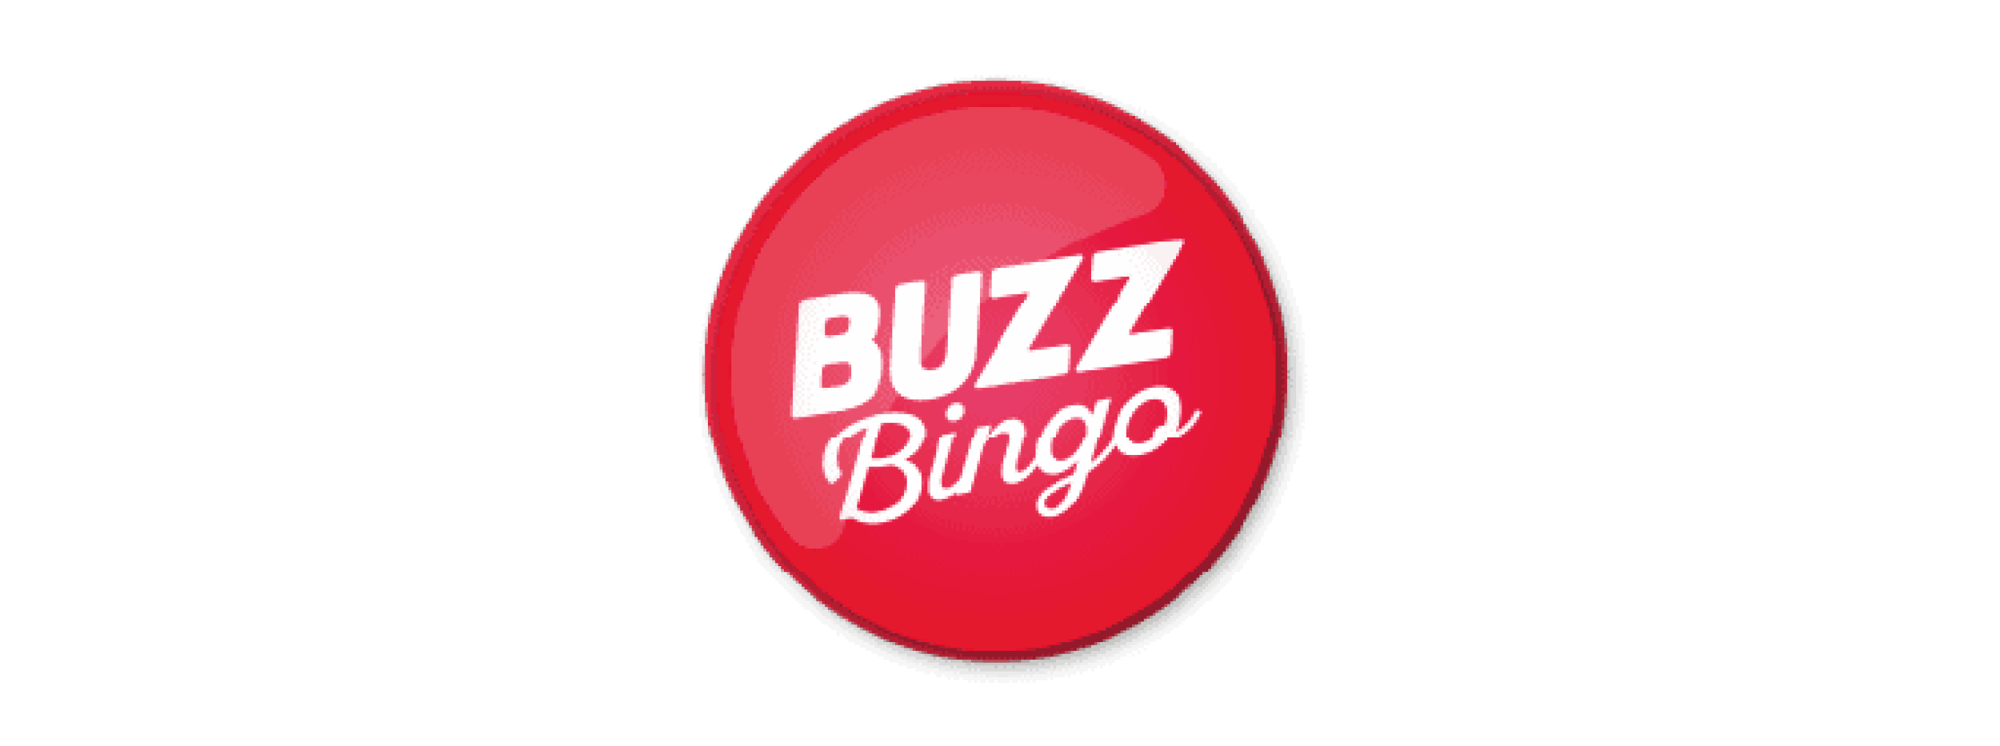 Buzz-Bingo-WorkBuzz